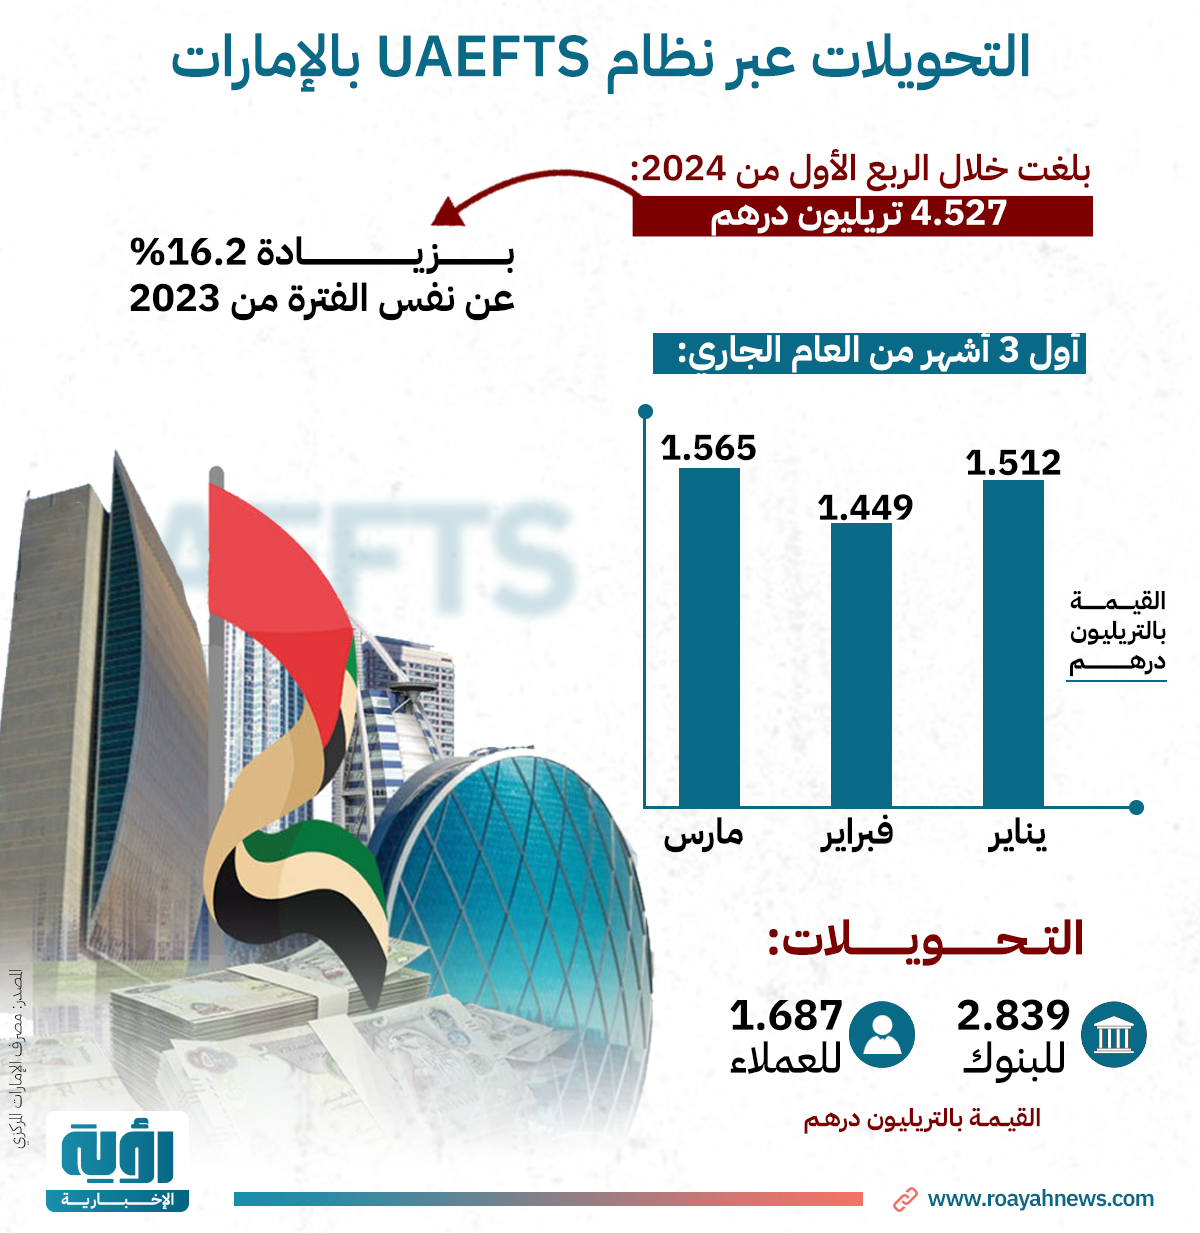 التحويلات عبر نظام UAEFTS بالإمارات